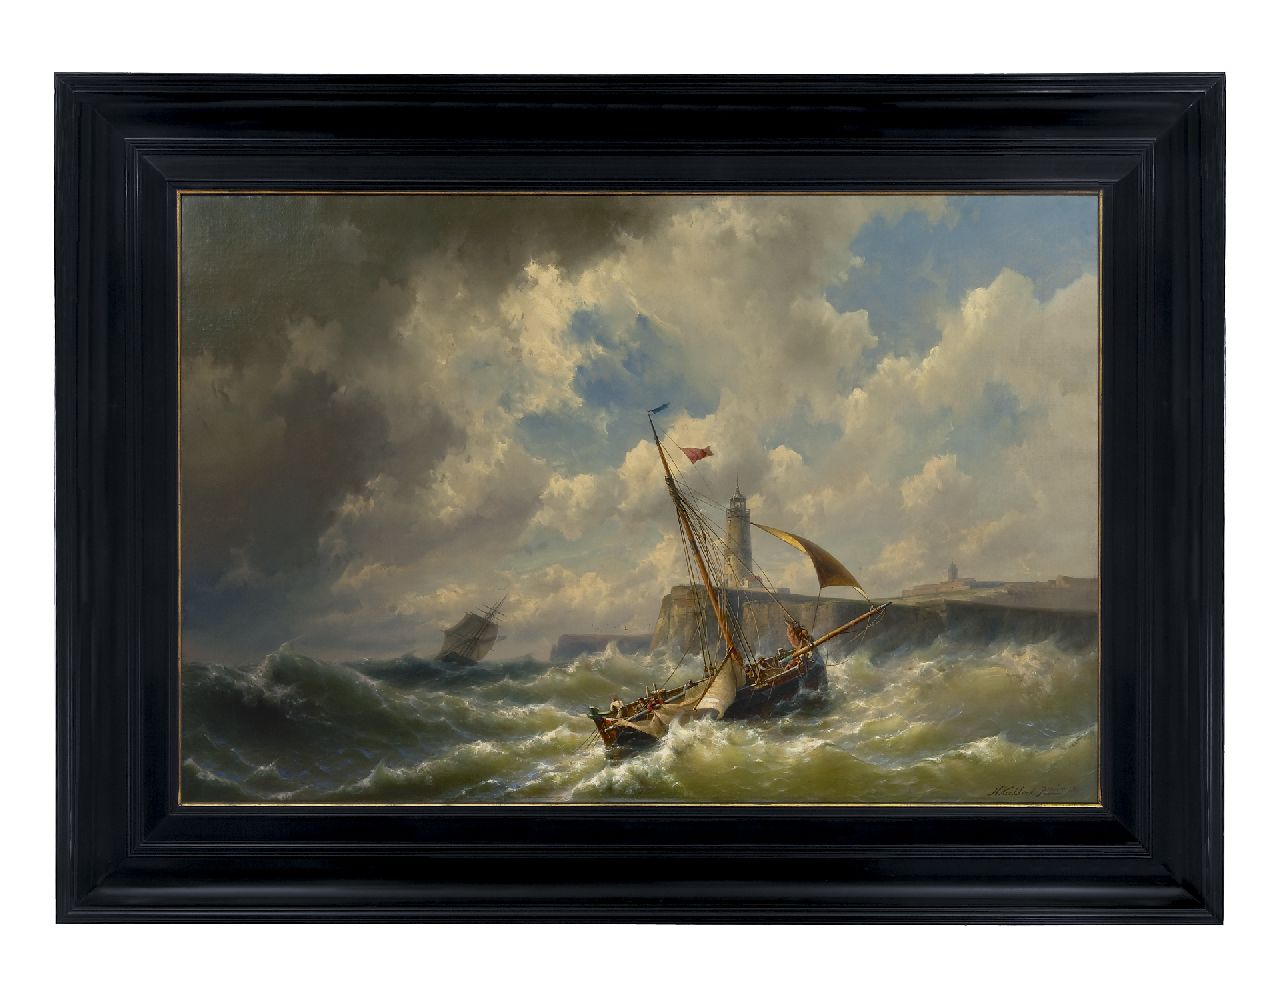 Koekkoek jr. H.  | Hermanus Koekkoek jr., Het binnenlopen van de haven bij storm, olieverf op doek 84,6 x 128,8 cm, gesigneerd rechtsonder en gedateerd 1860